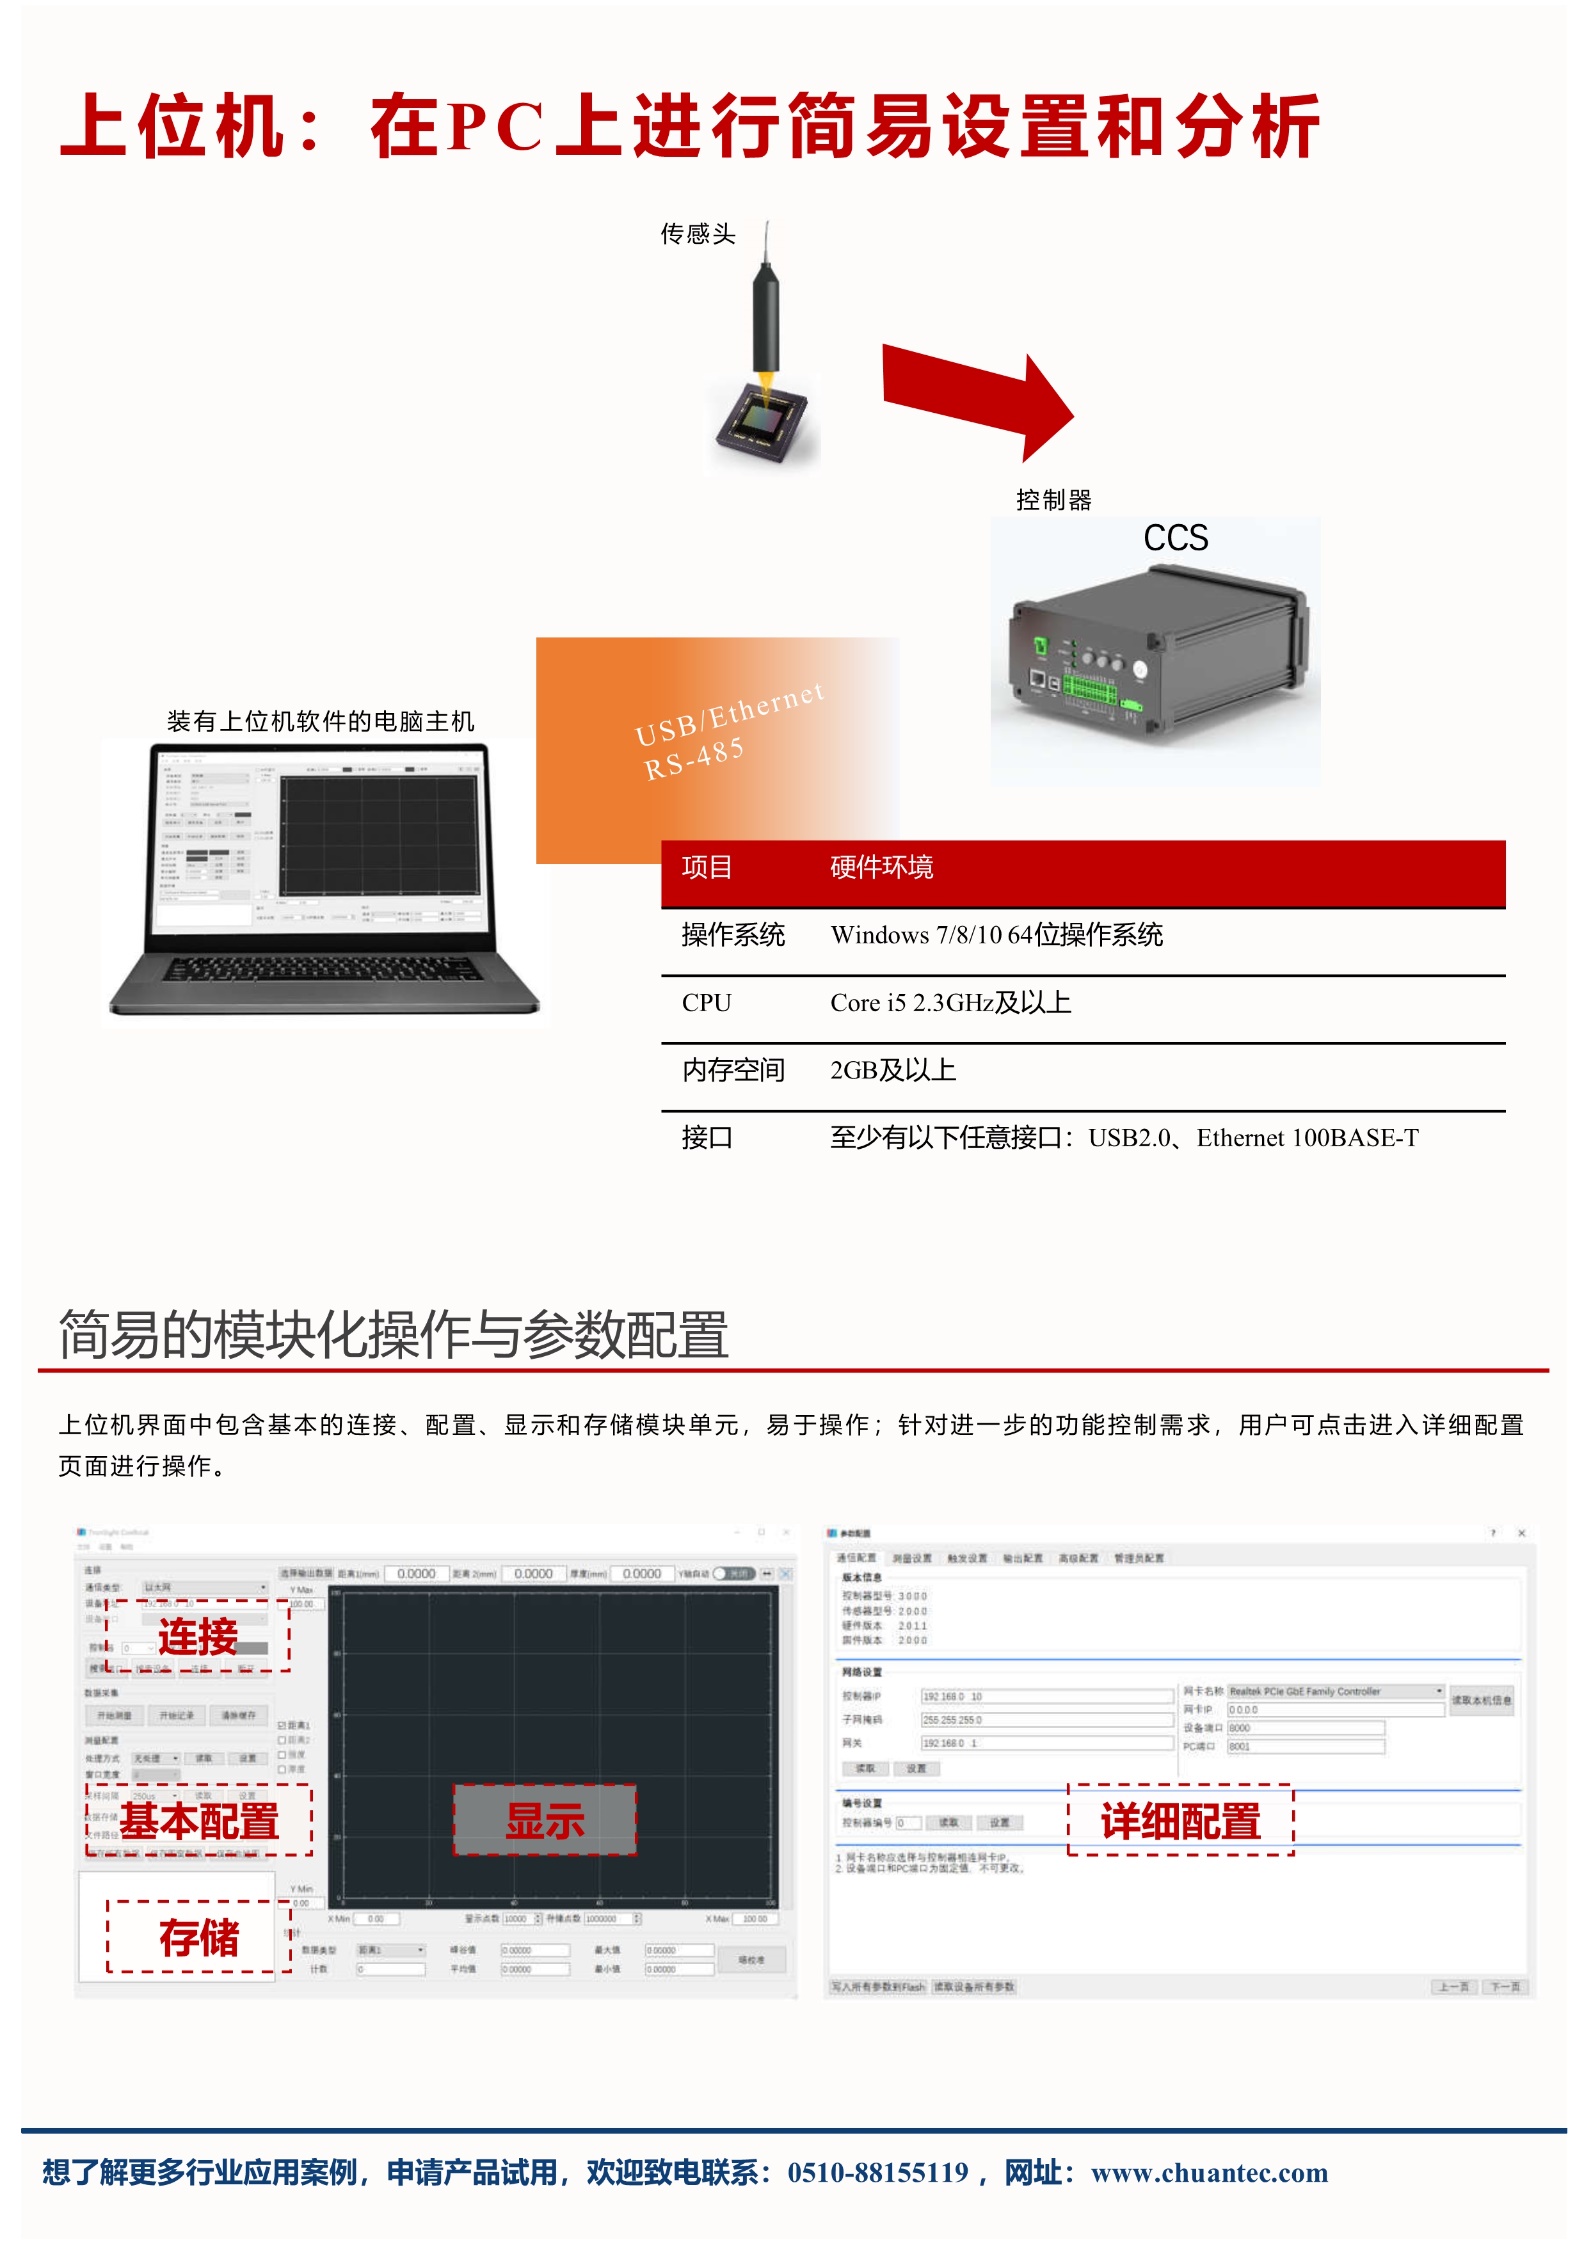 光谱共焦位移传感器/同轴光位移传感器LT-C系列 可替代基恩士CL-3000系列